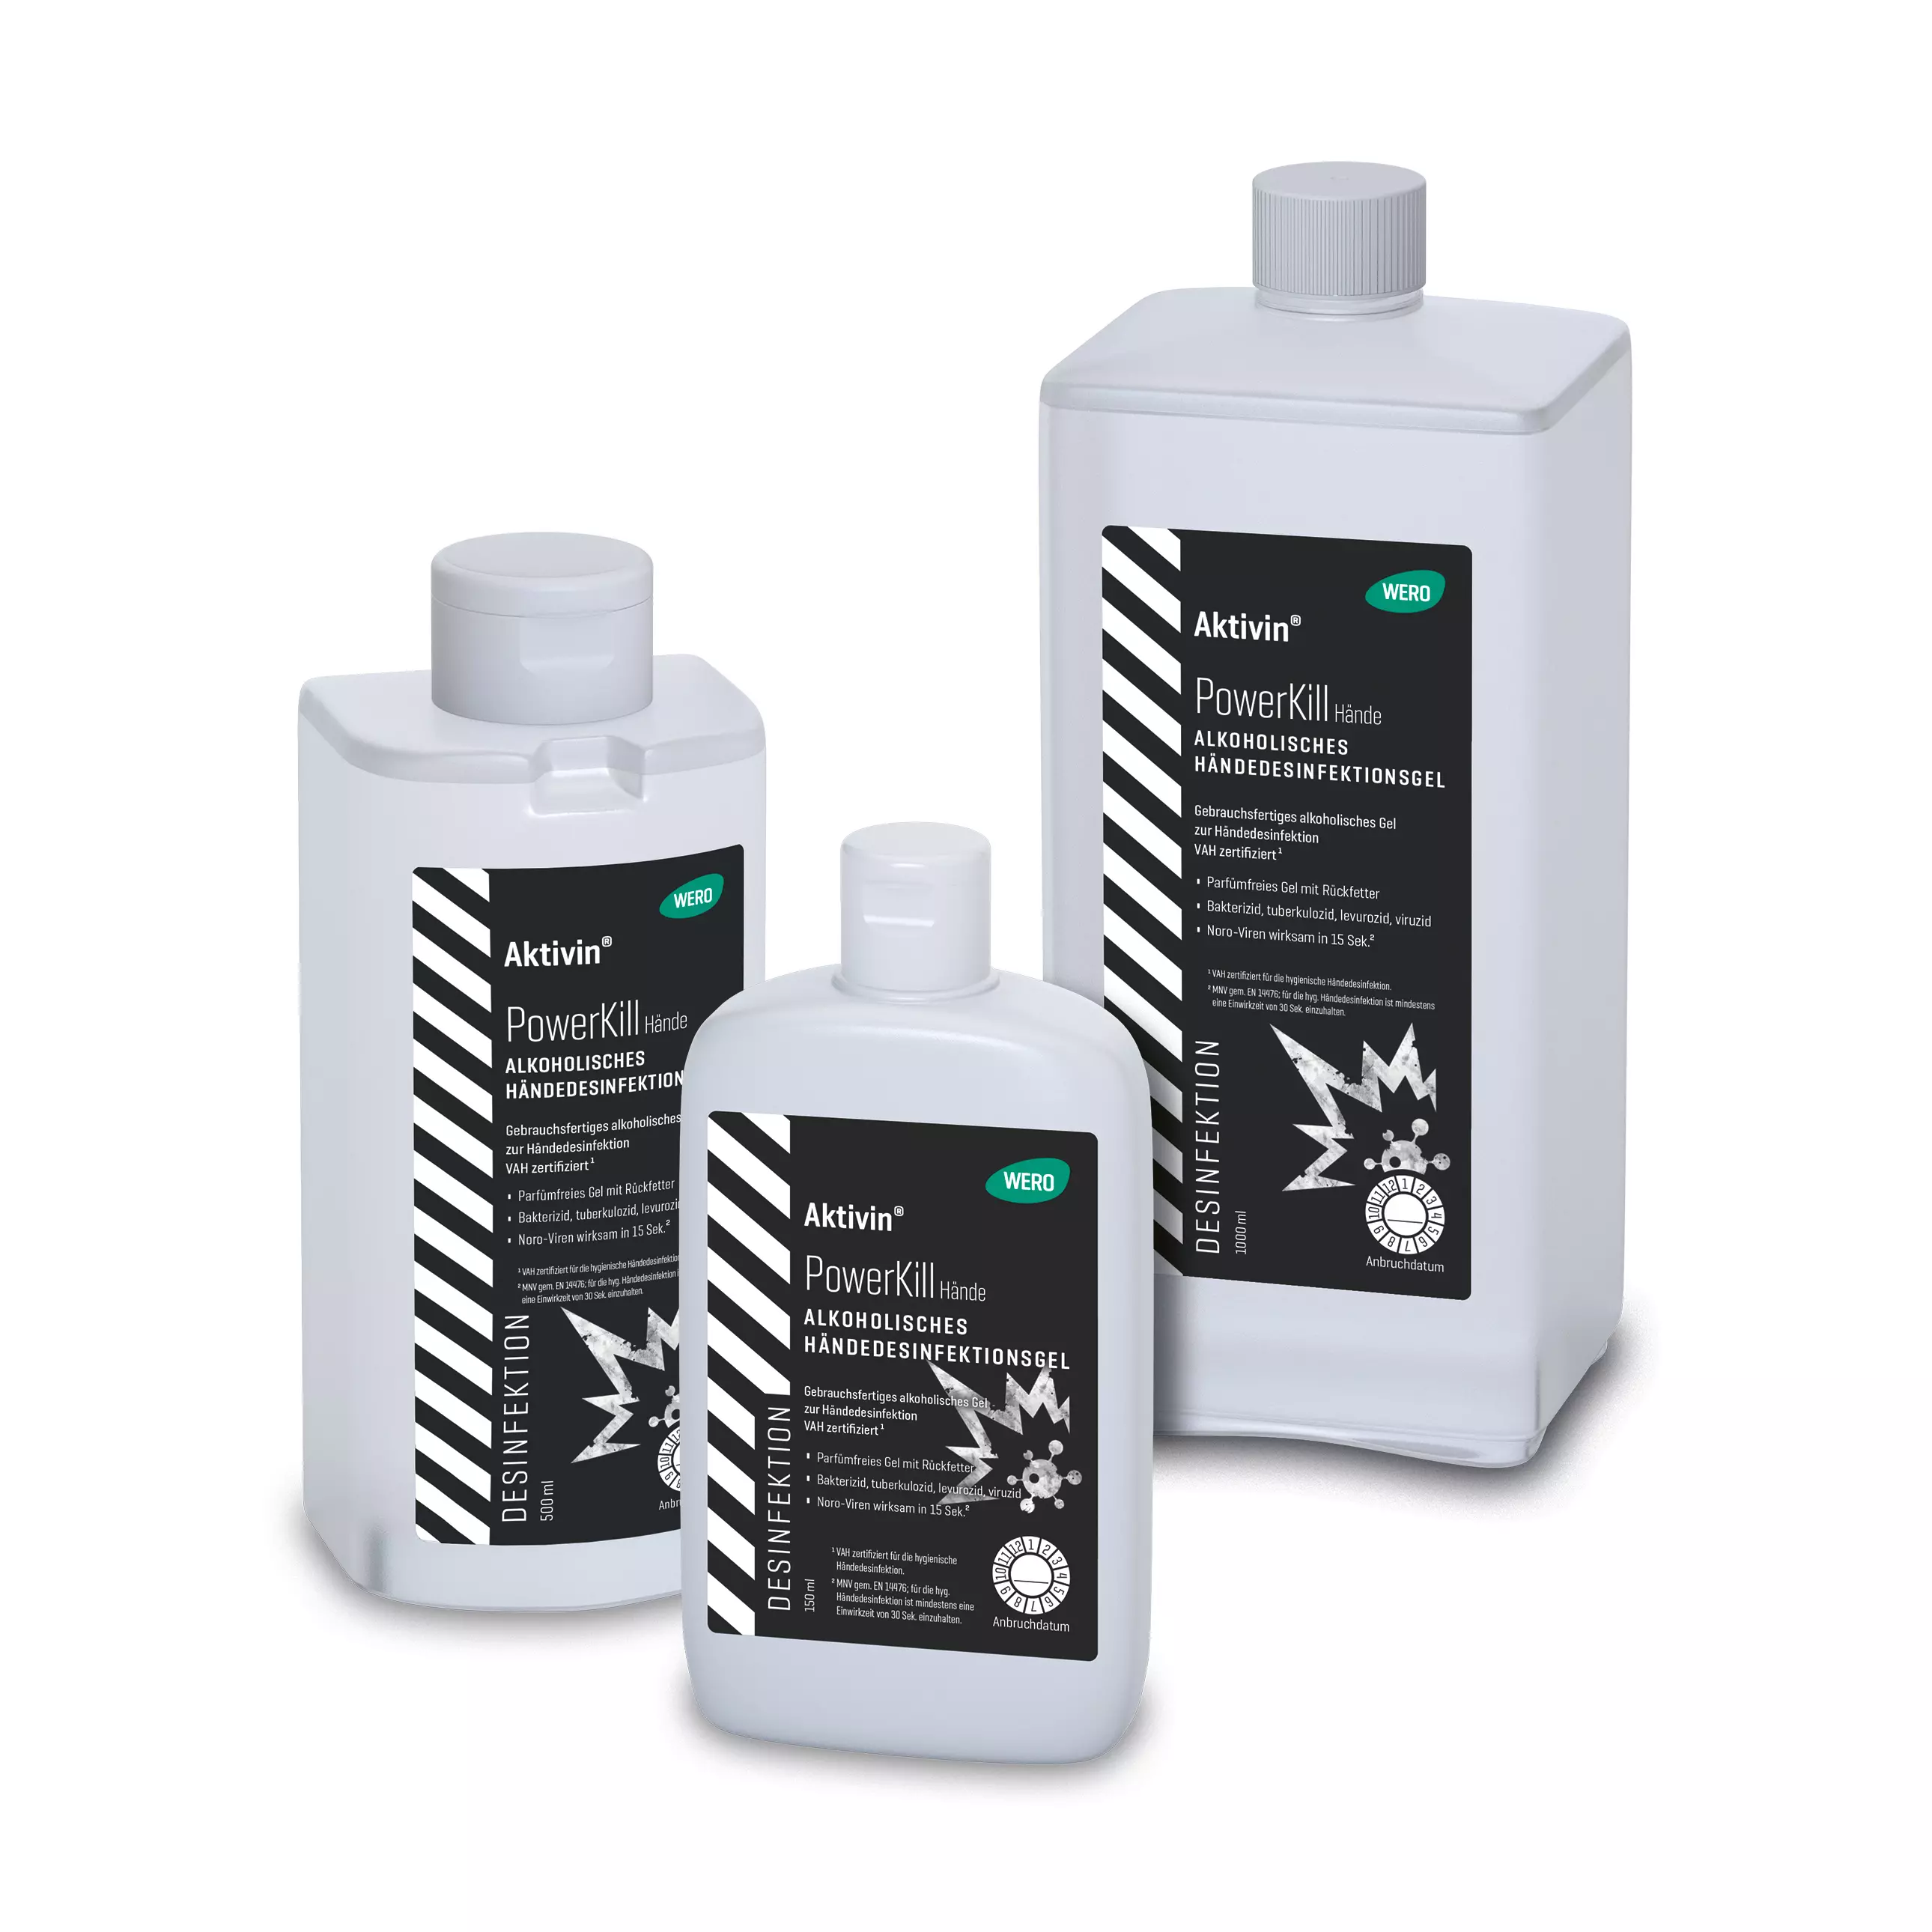 Hand disinfectant gel Aktivin® PowerKill - Euro bottle, 500 ml